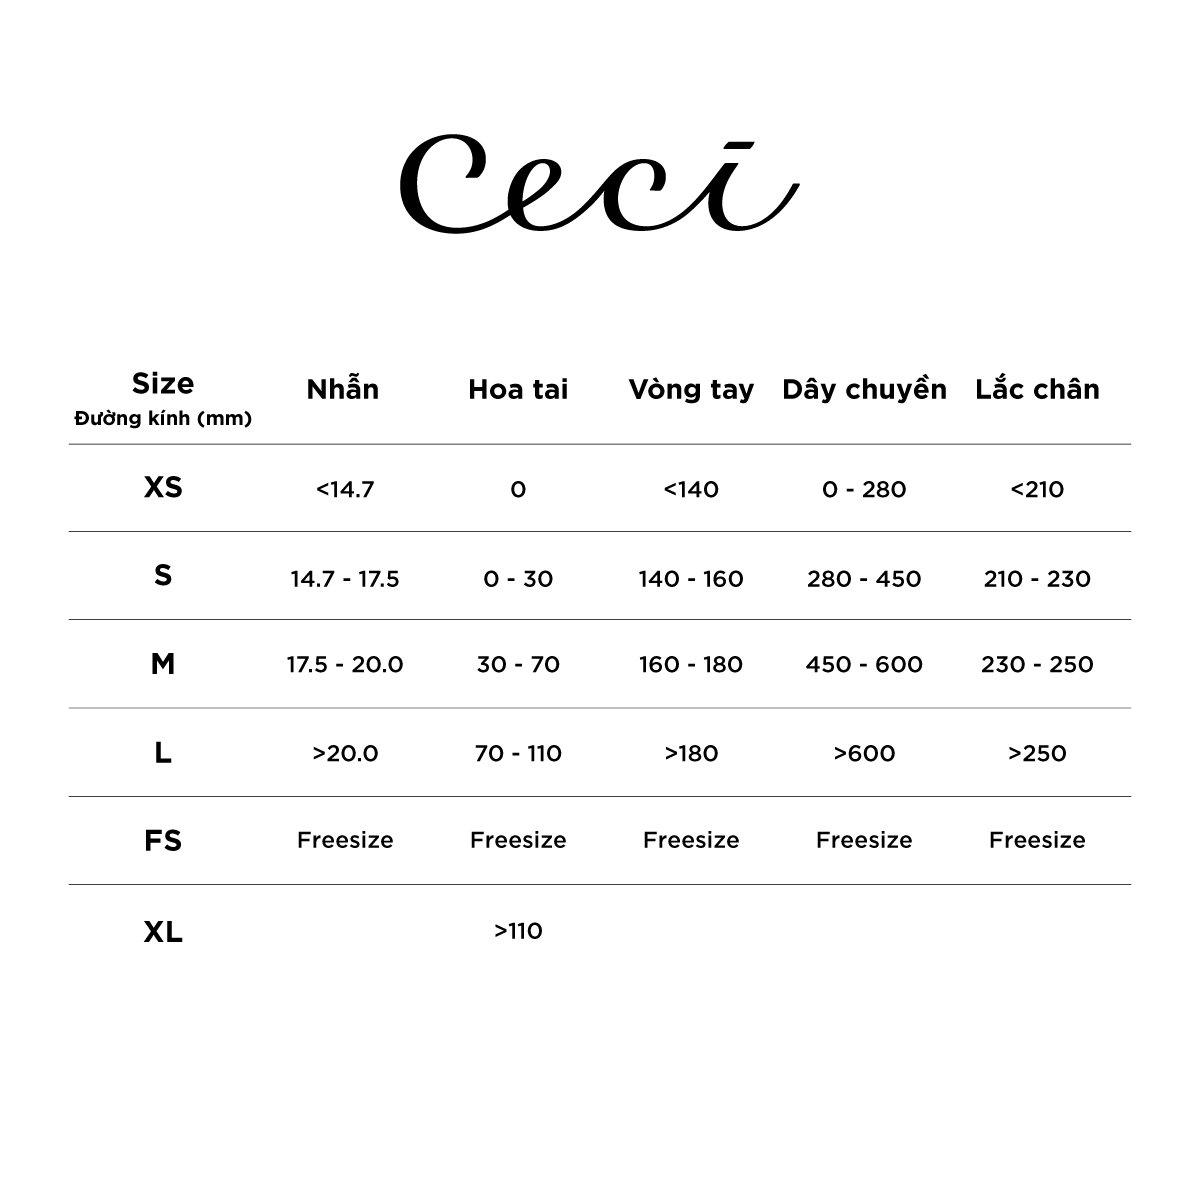 CECI - Khuyên tai nữ khoen tròn xoắn vải dạng hở thời trang CC1-07000101